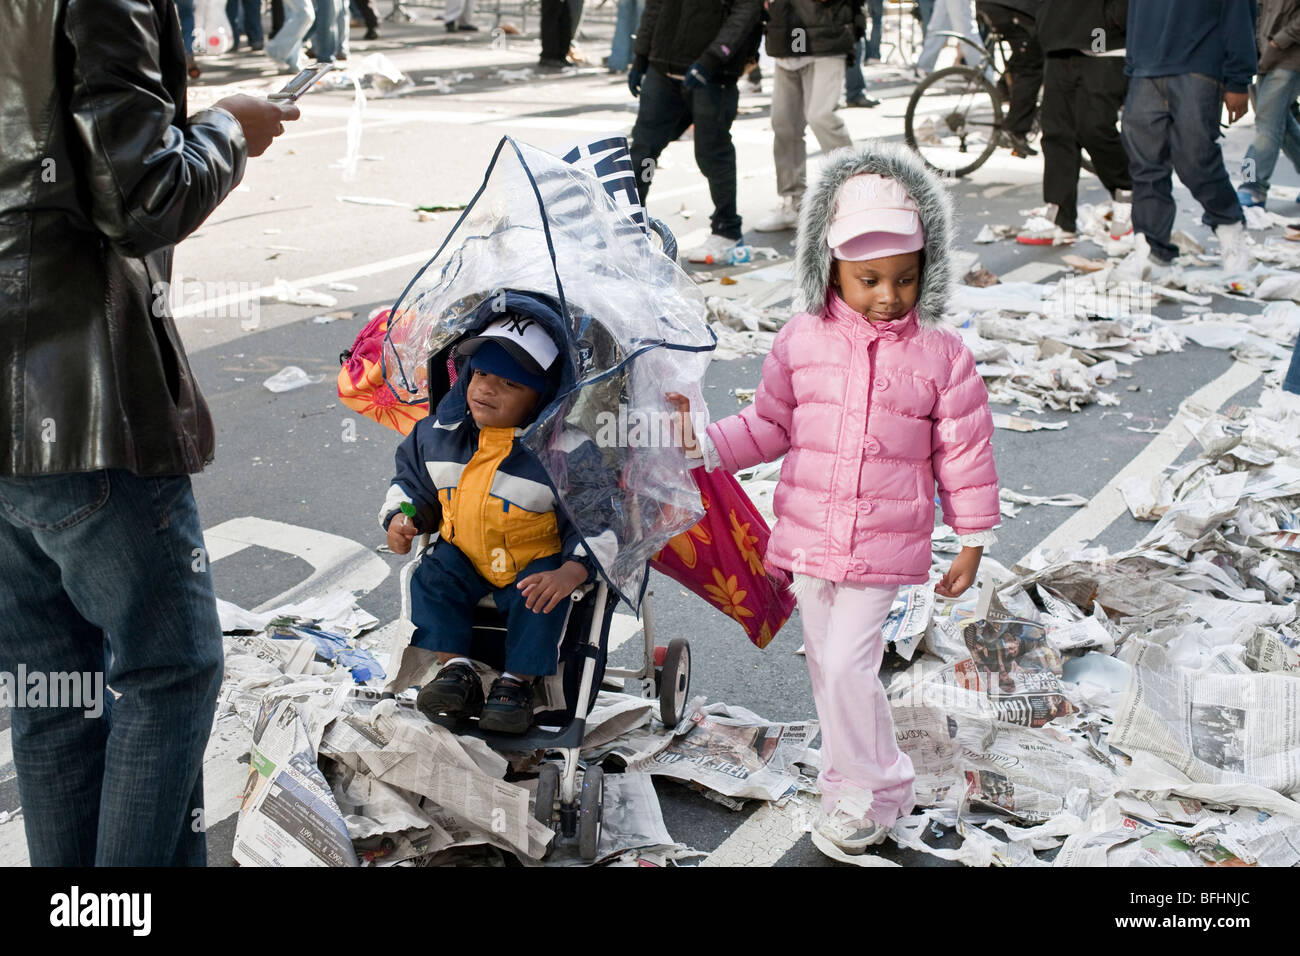 Negro guapo infante en cochecito y su hermana chicas en rosa, ambos vistiendo gorras de los Yankees de Nueva York, parecen desconcertados por trozos de papel en calle Foto de stock